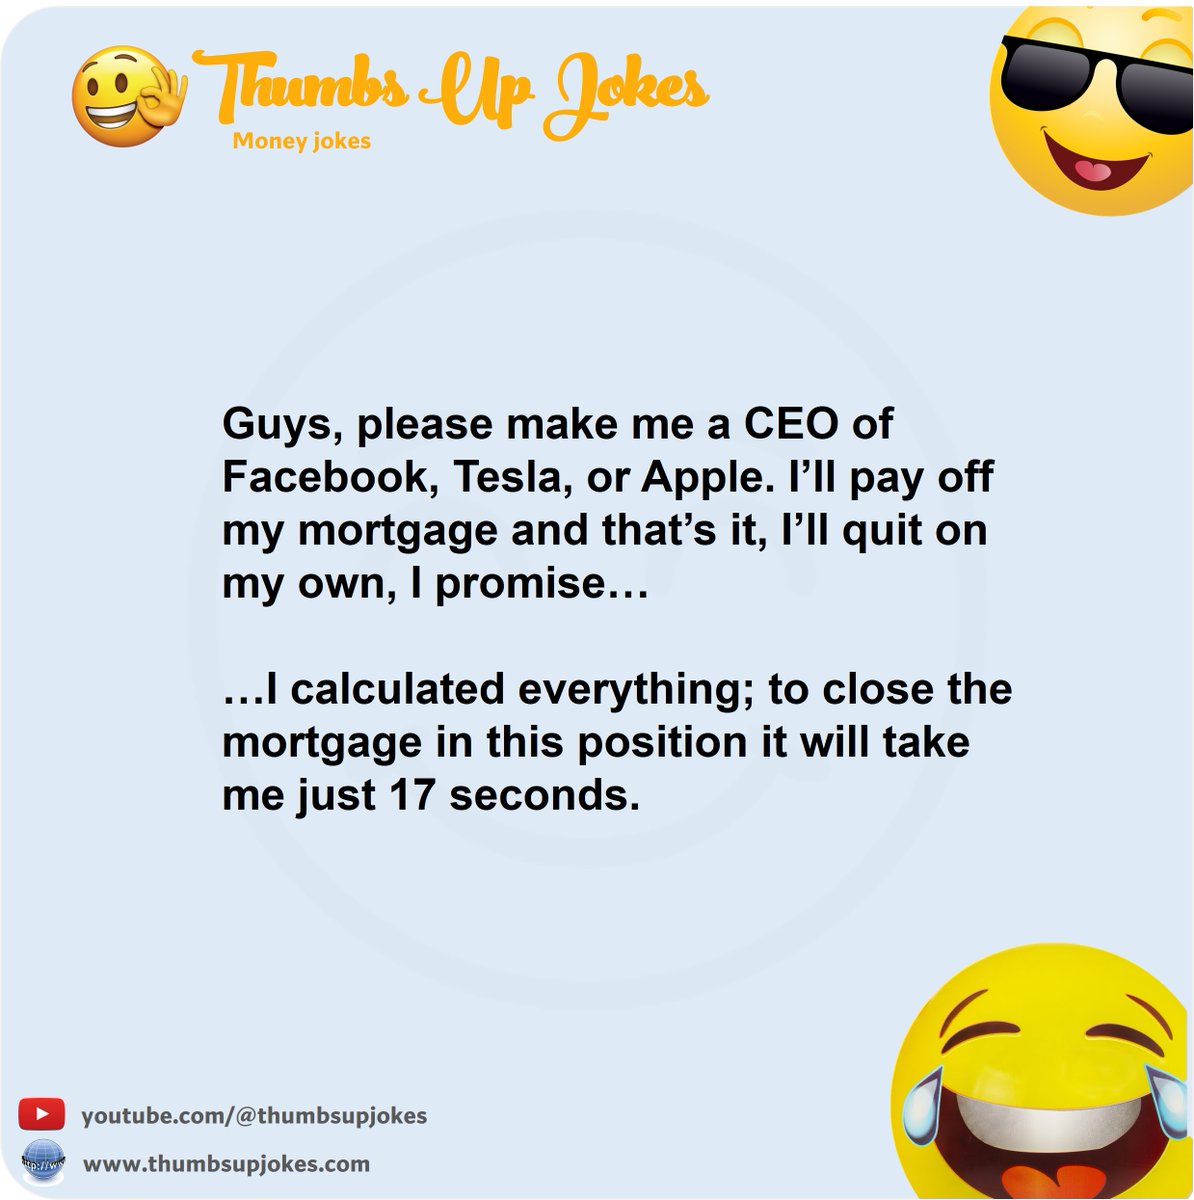 Guys, please make me a CEO of Facebook 🙂
#jokes #joke #fun #funny #comedy #humor #moneyjokes